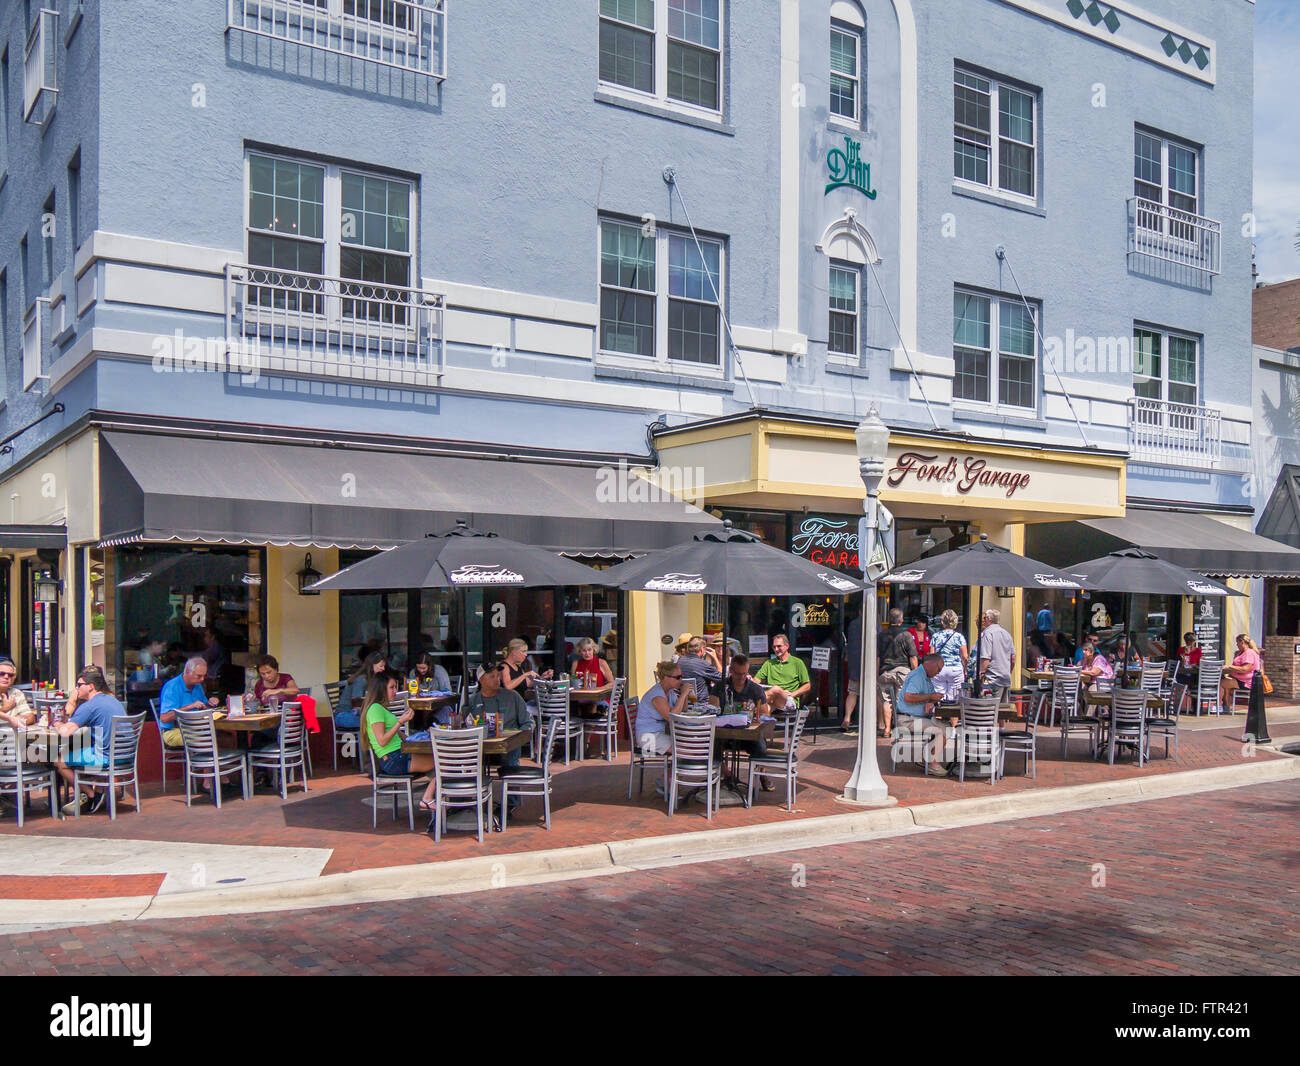 El comedor al aire libre en el café en la acera en la primera calle a Fords Garaje restaurante en el centro de Fort Myers, en la costa del golfo de Florida Foto de stock